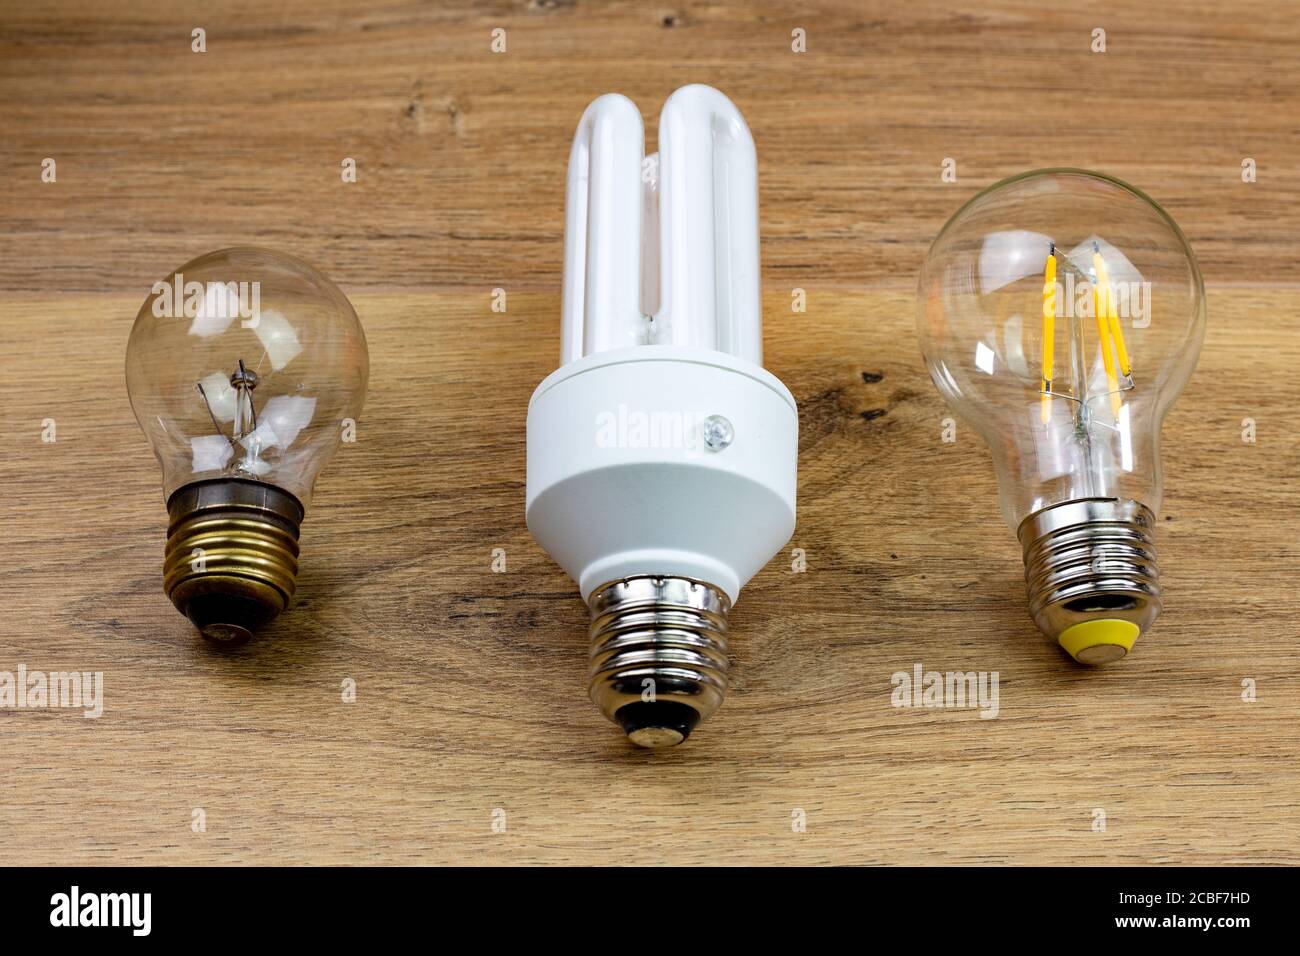 Drei Generationen von Glühbirnen, Glühbirnen Anfang des zwanzigsten Jahrhunderts, kompakte Leuchtstofflampen Ende des zwanzigsten Jahrhunderts und LED-Glühbirne Anfang zwanzig ersten Cen Stockfoto